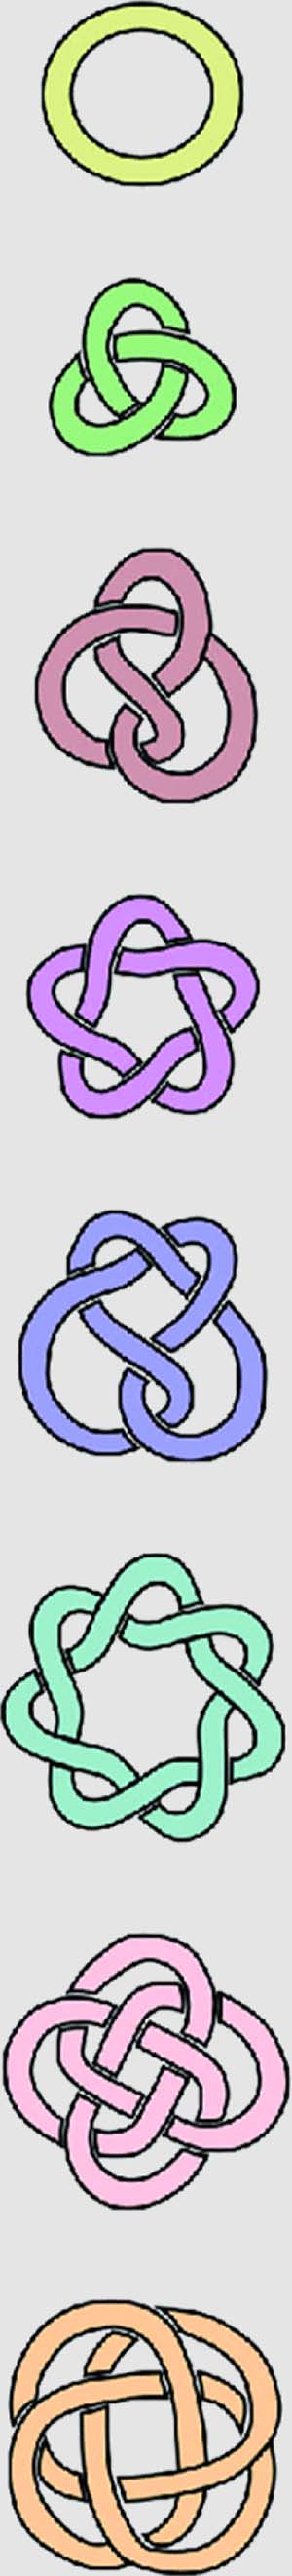 knots diagram